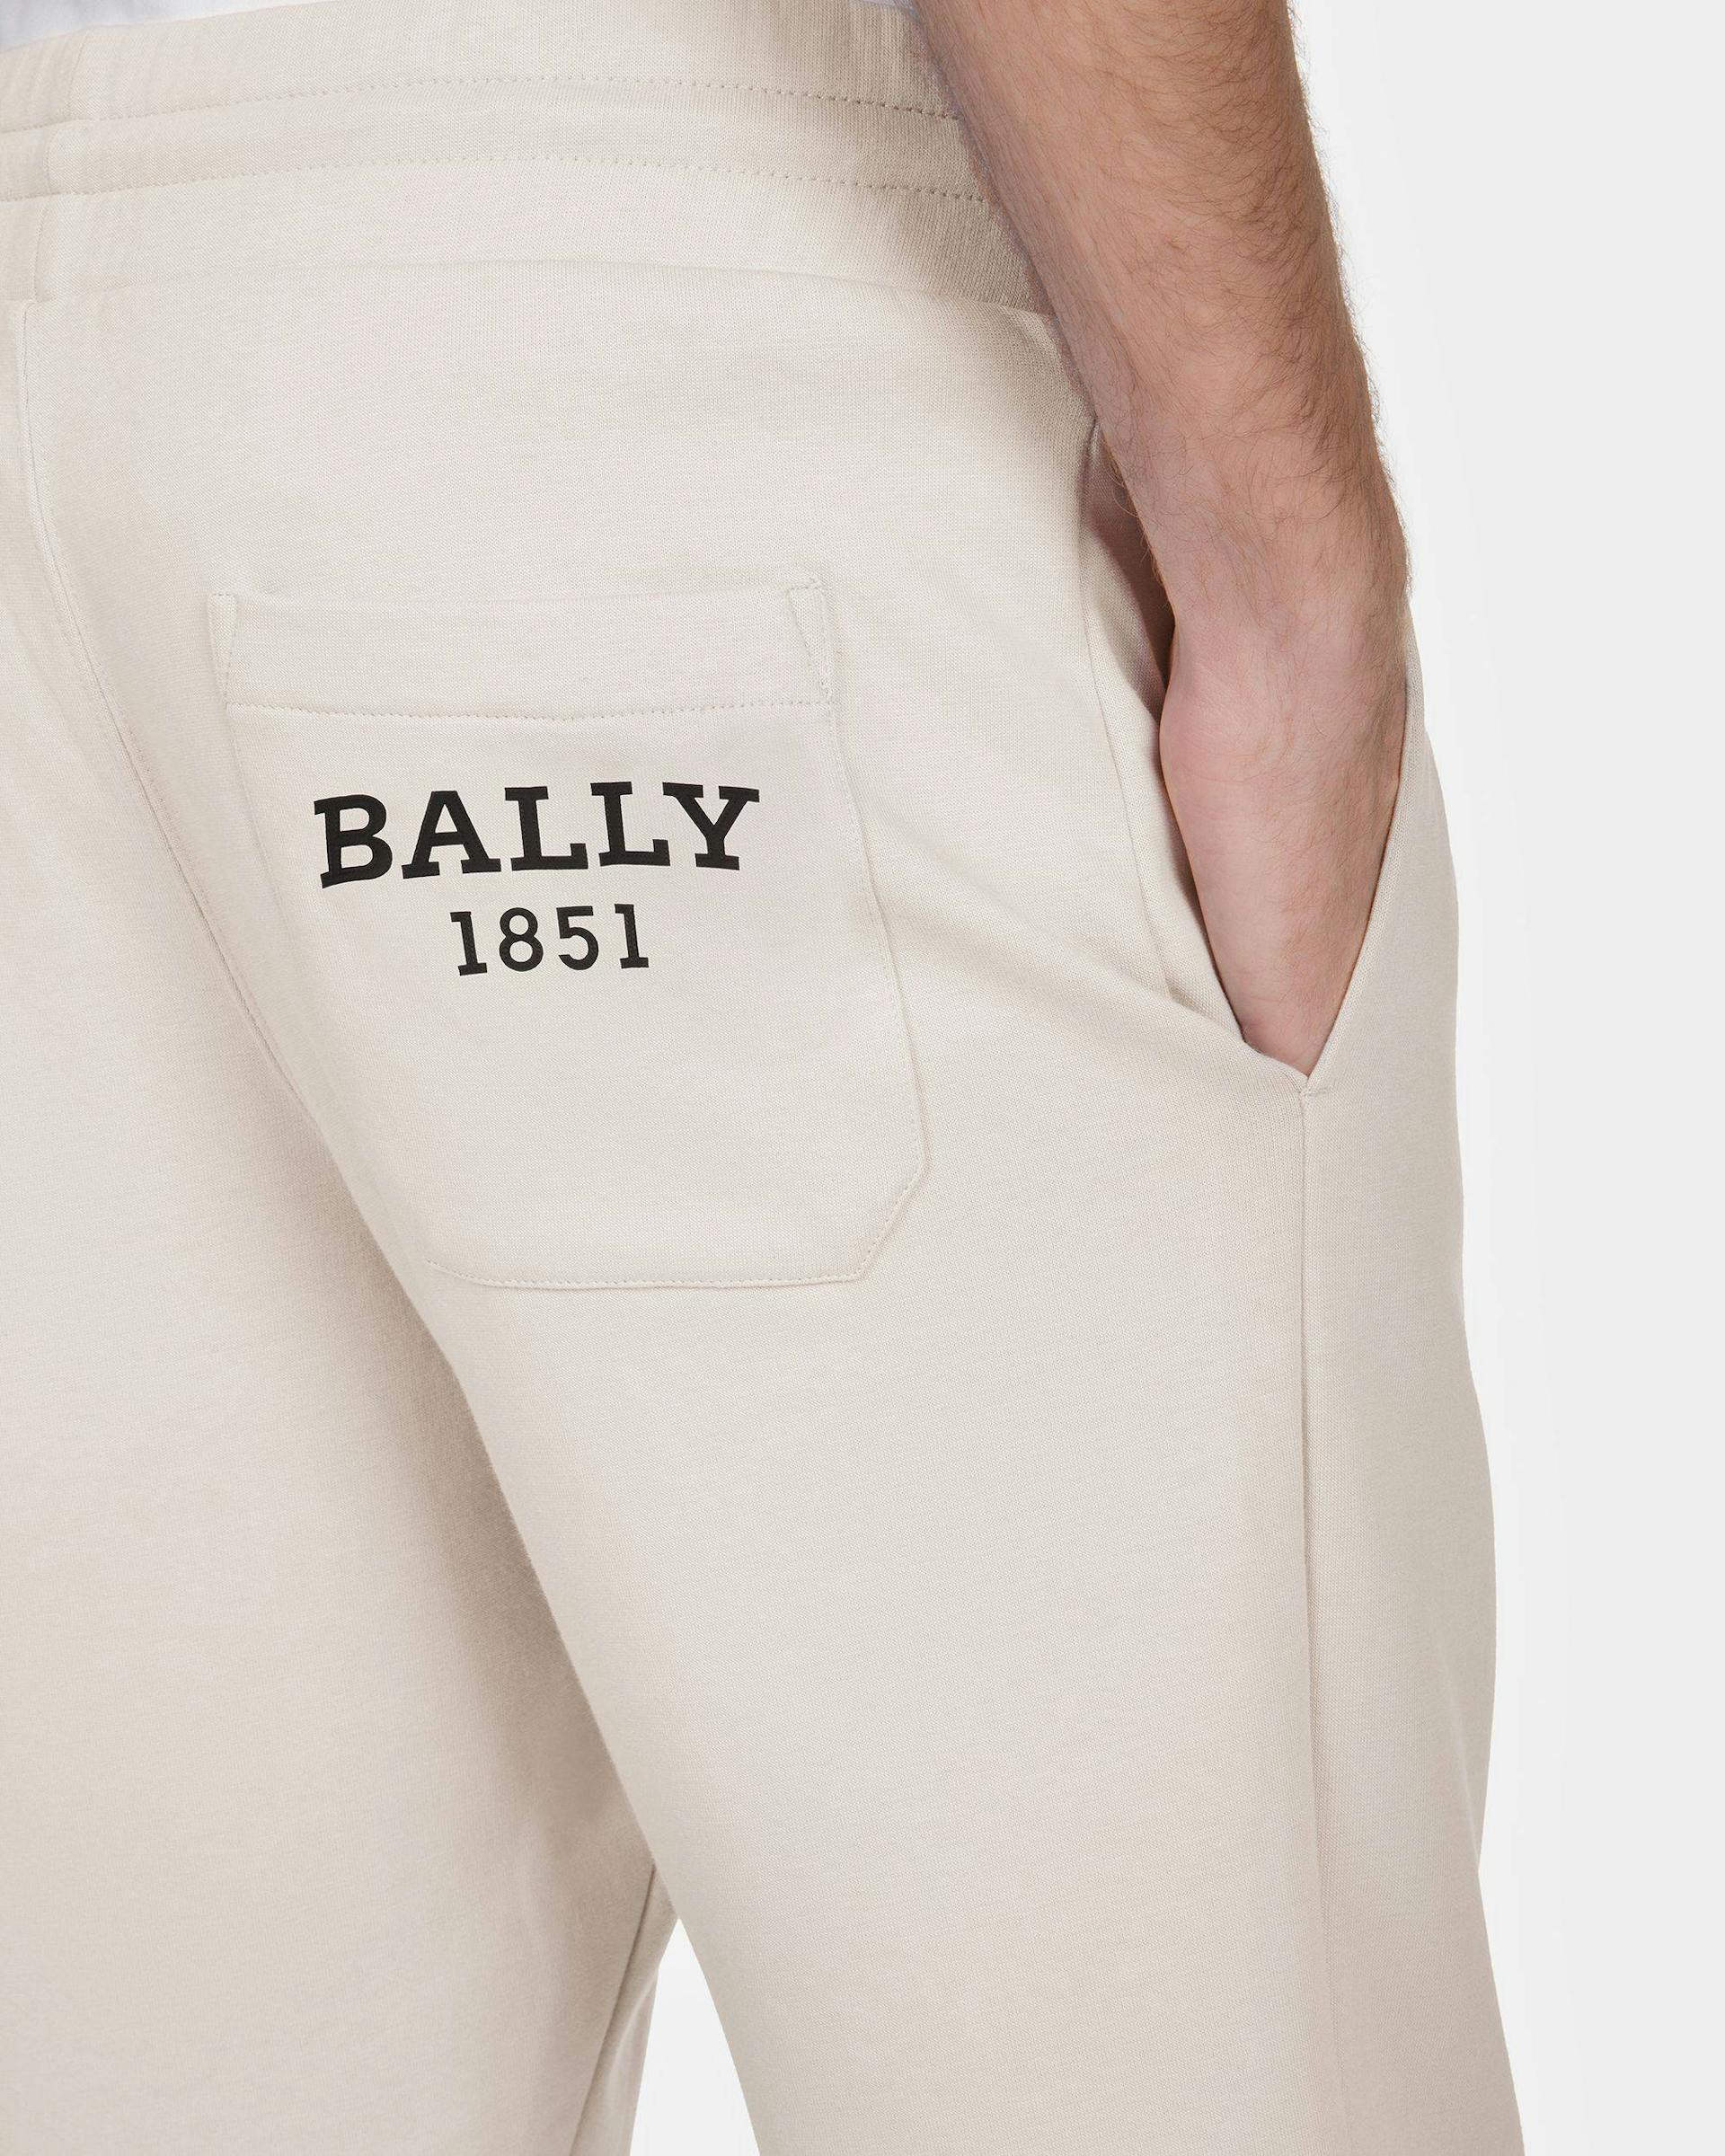 Pantalone Tuta In Cotone Grigio E Nero - Uomo - Bally - 04